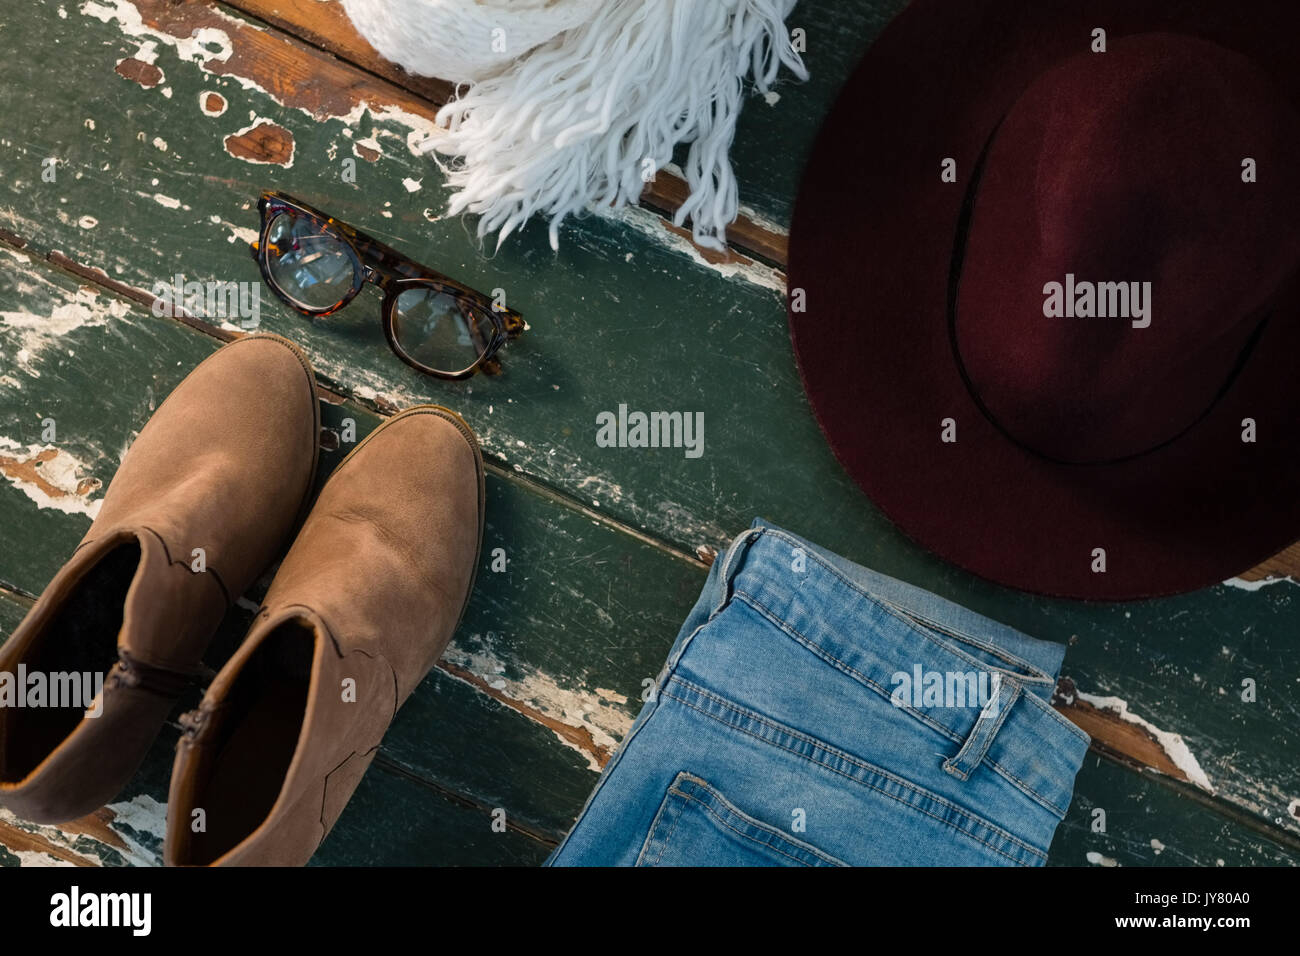 Hohe Betrachtungswinkel von Schuh- und Jeans mit persönlichen Accessoires auf hölzernen Tisch Stockfoto